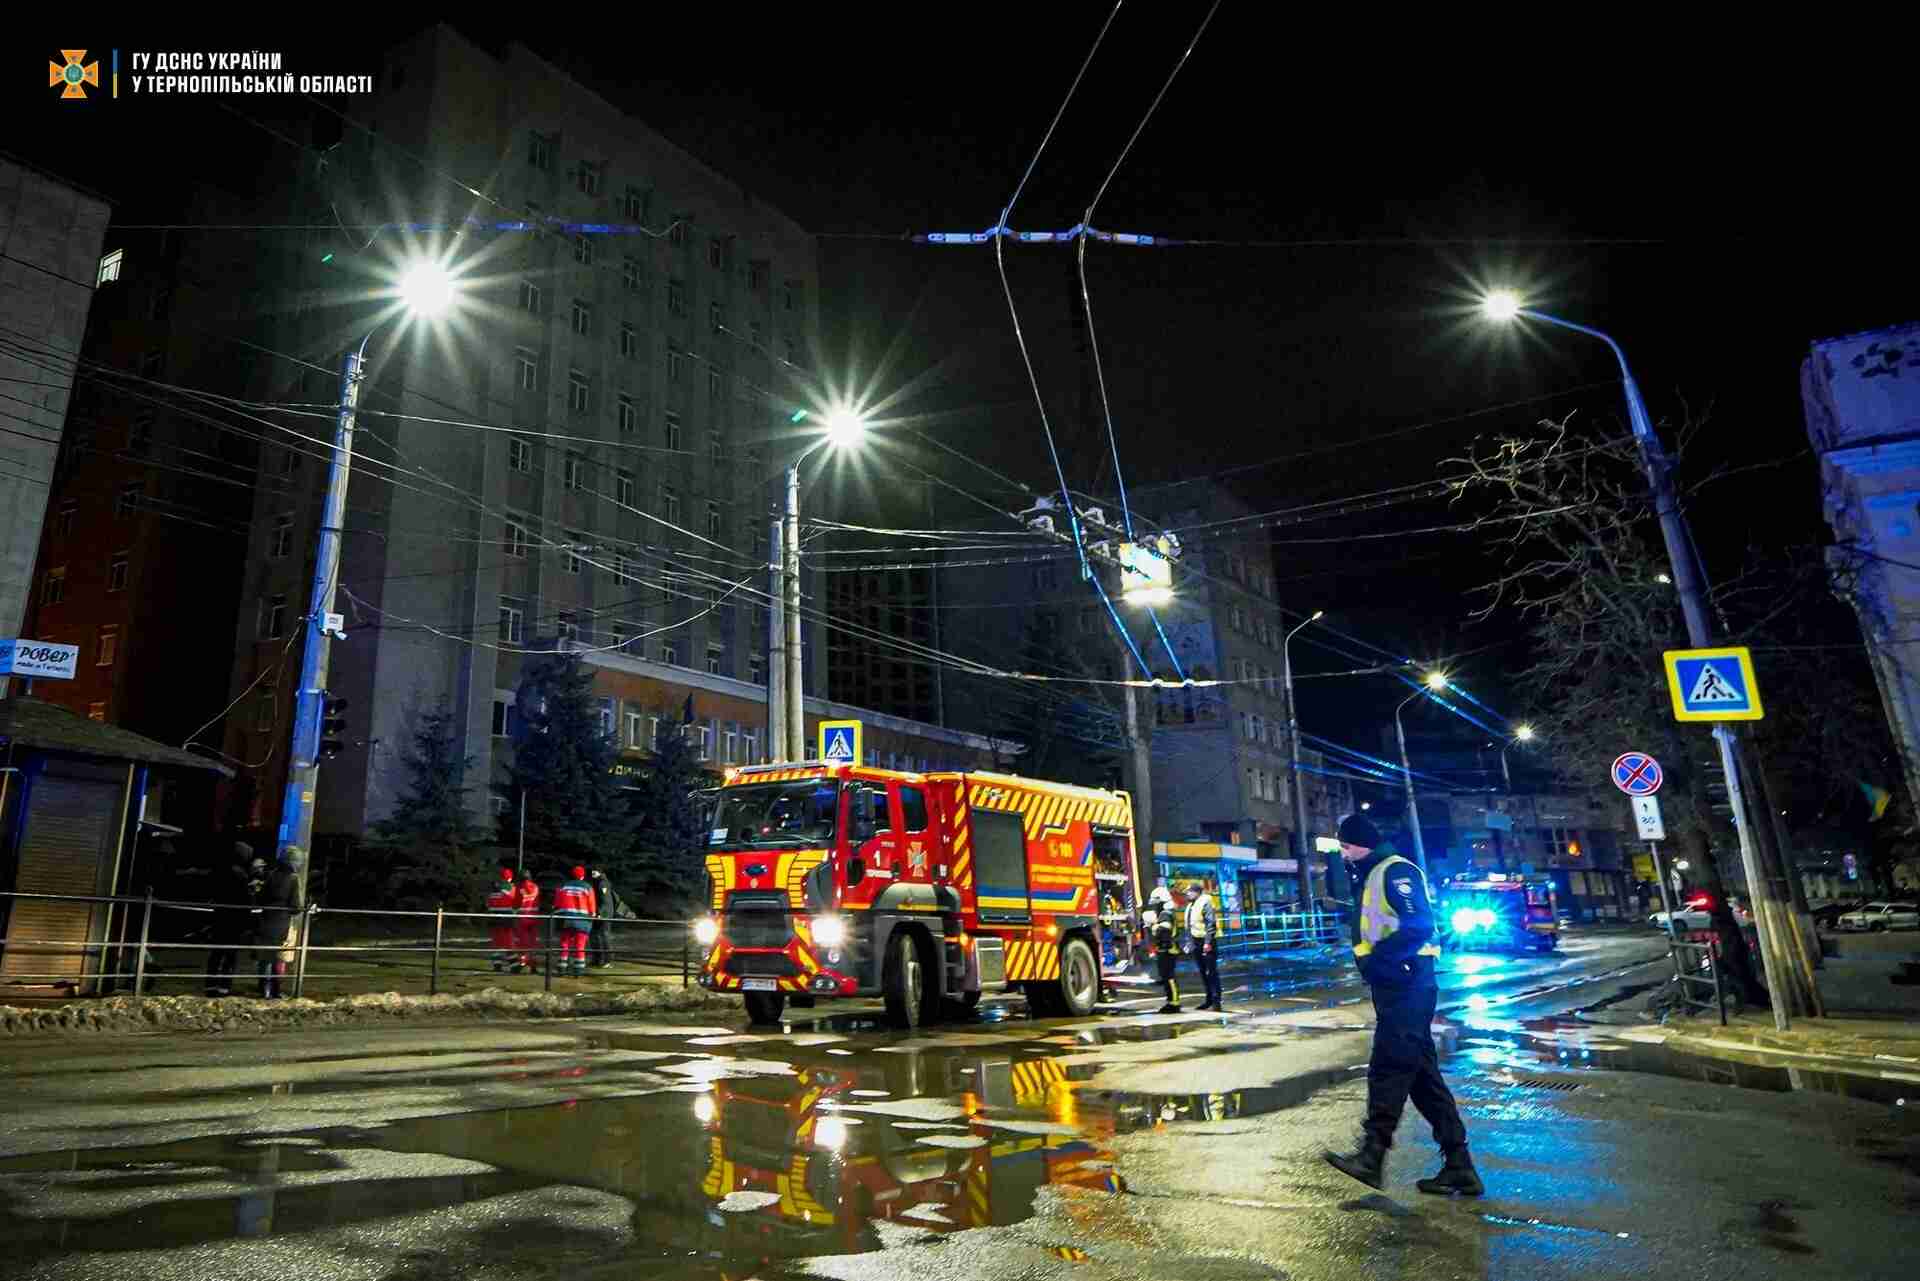 Перед загорянням очевидці чули вибух: у Тернополі горів «Будинок правосуддя» (ФОТО, ВІДЕО)